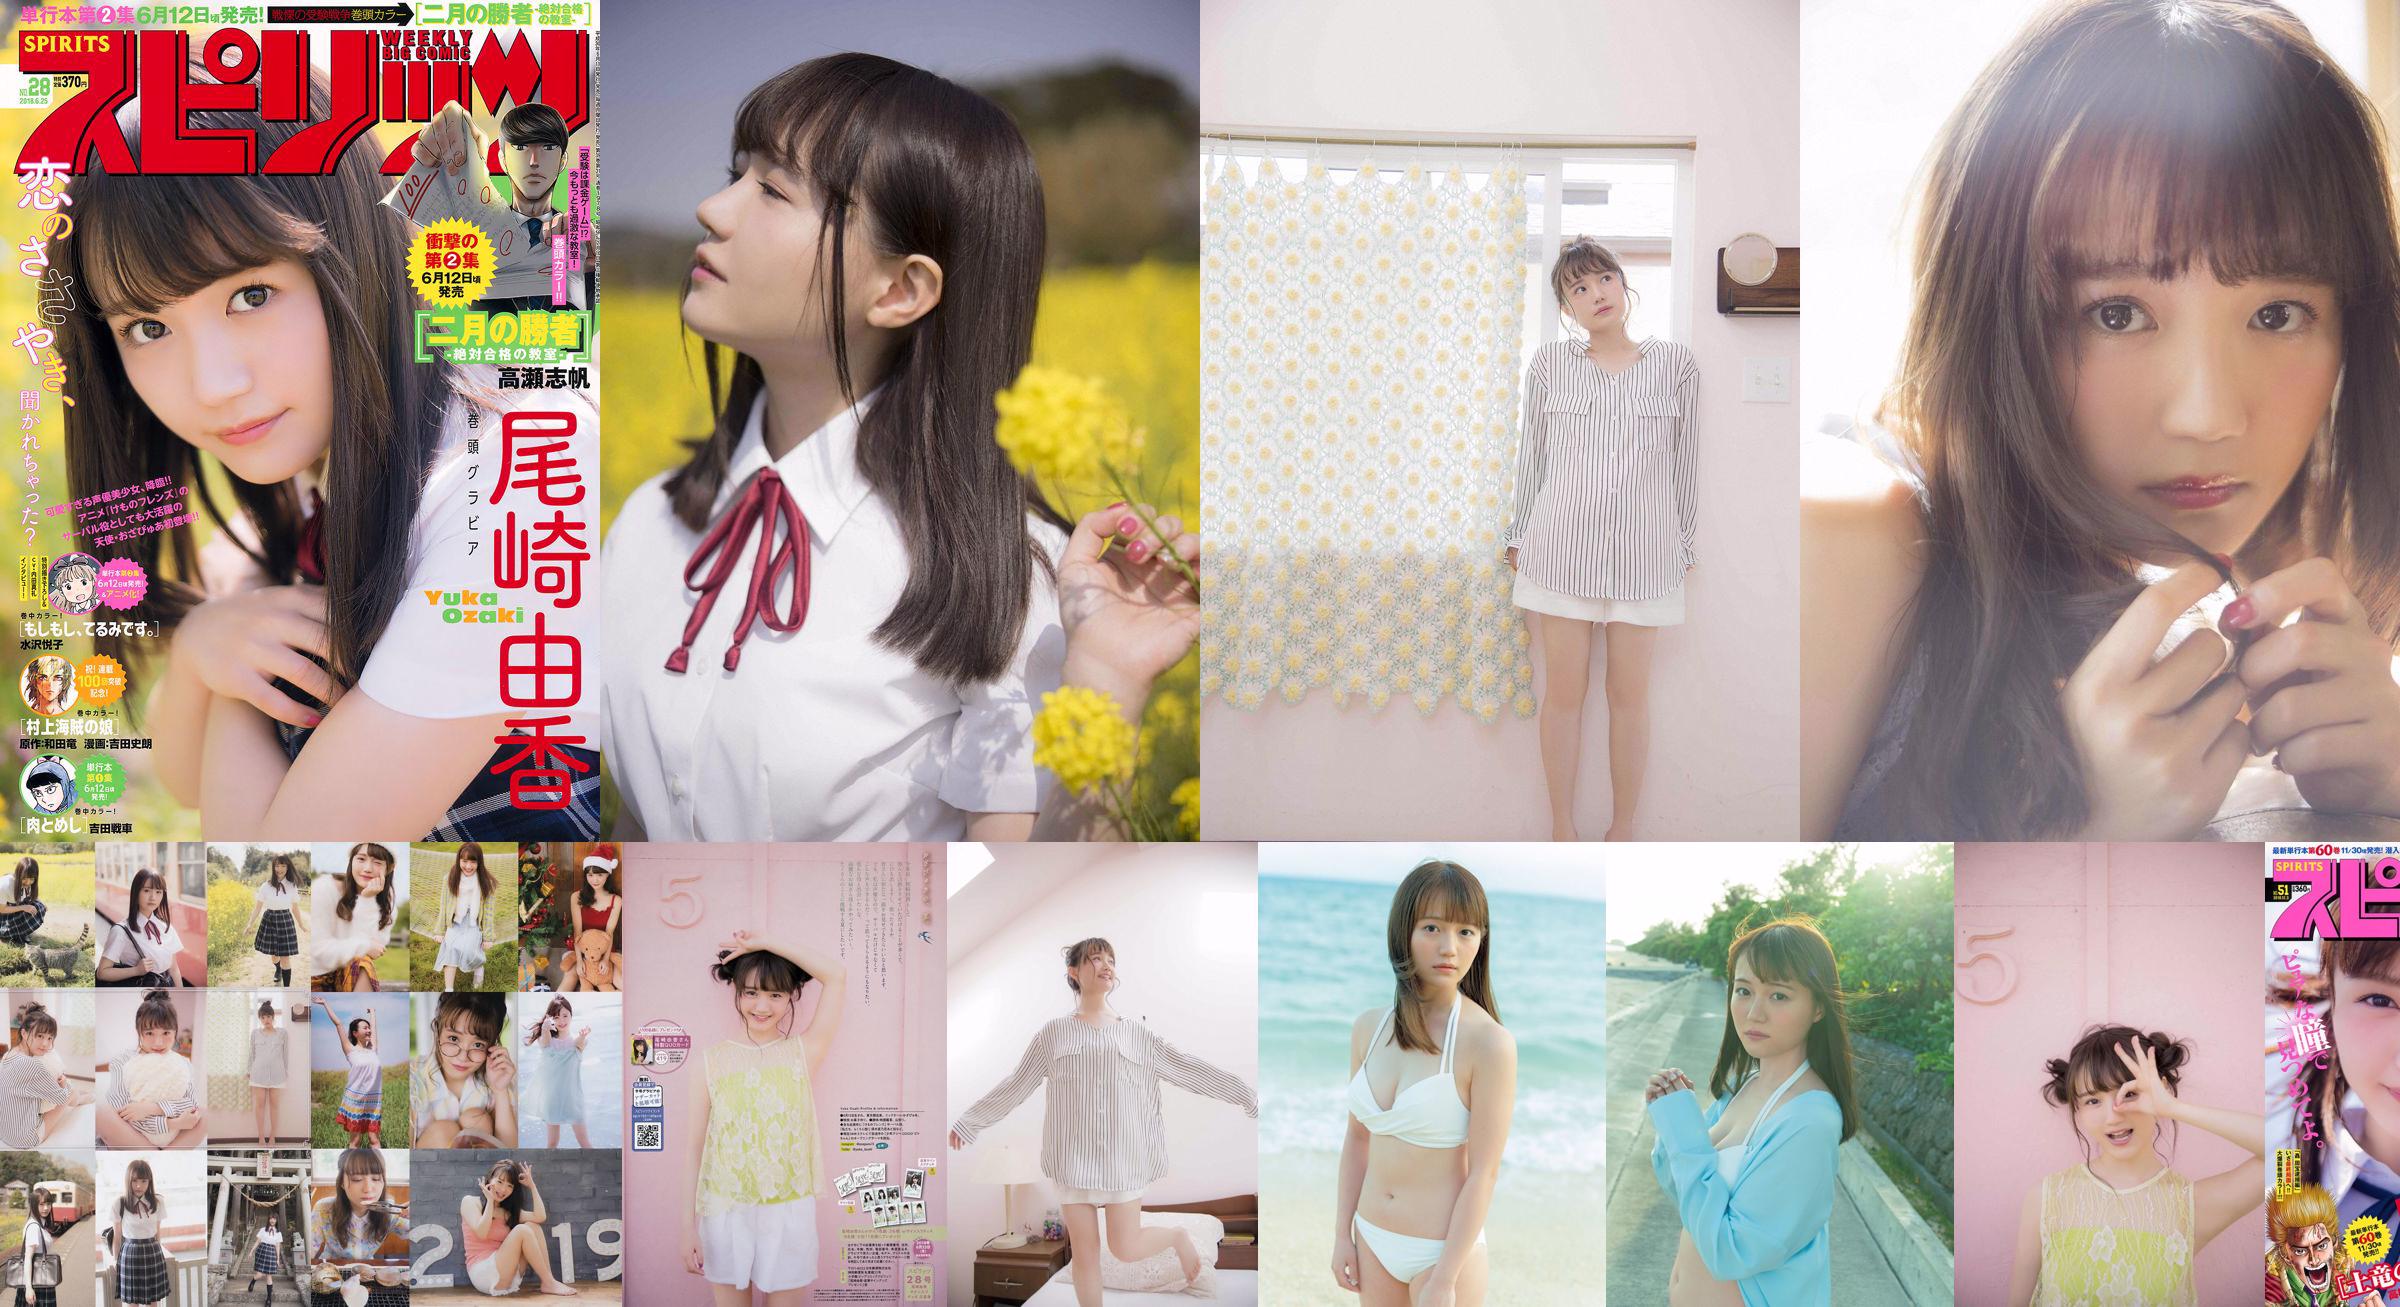 [PIĄTEK] Yuka Ozaki „Aktor głosowy głównej bohaterki anime„ Kemono Friends ”jest teraz w białym bikini” Zdjęcie No.58446e Strona 3